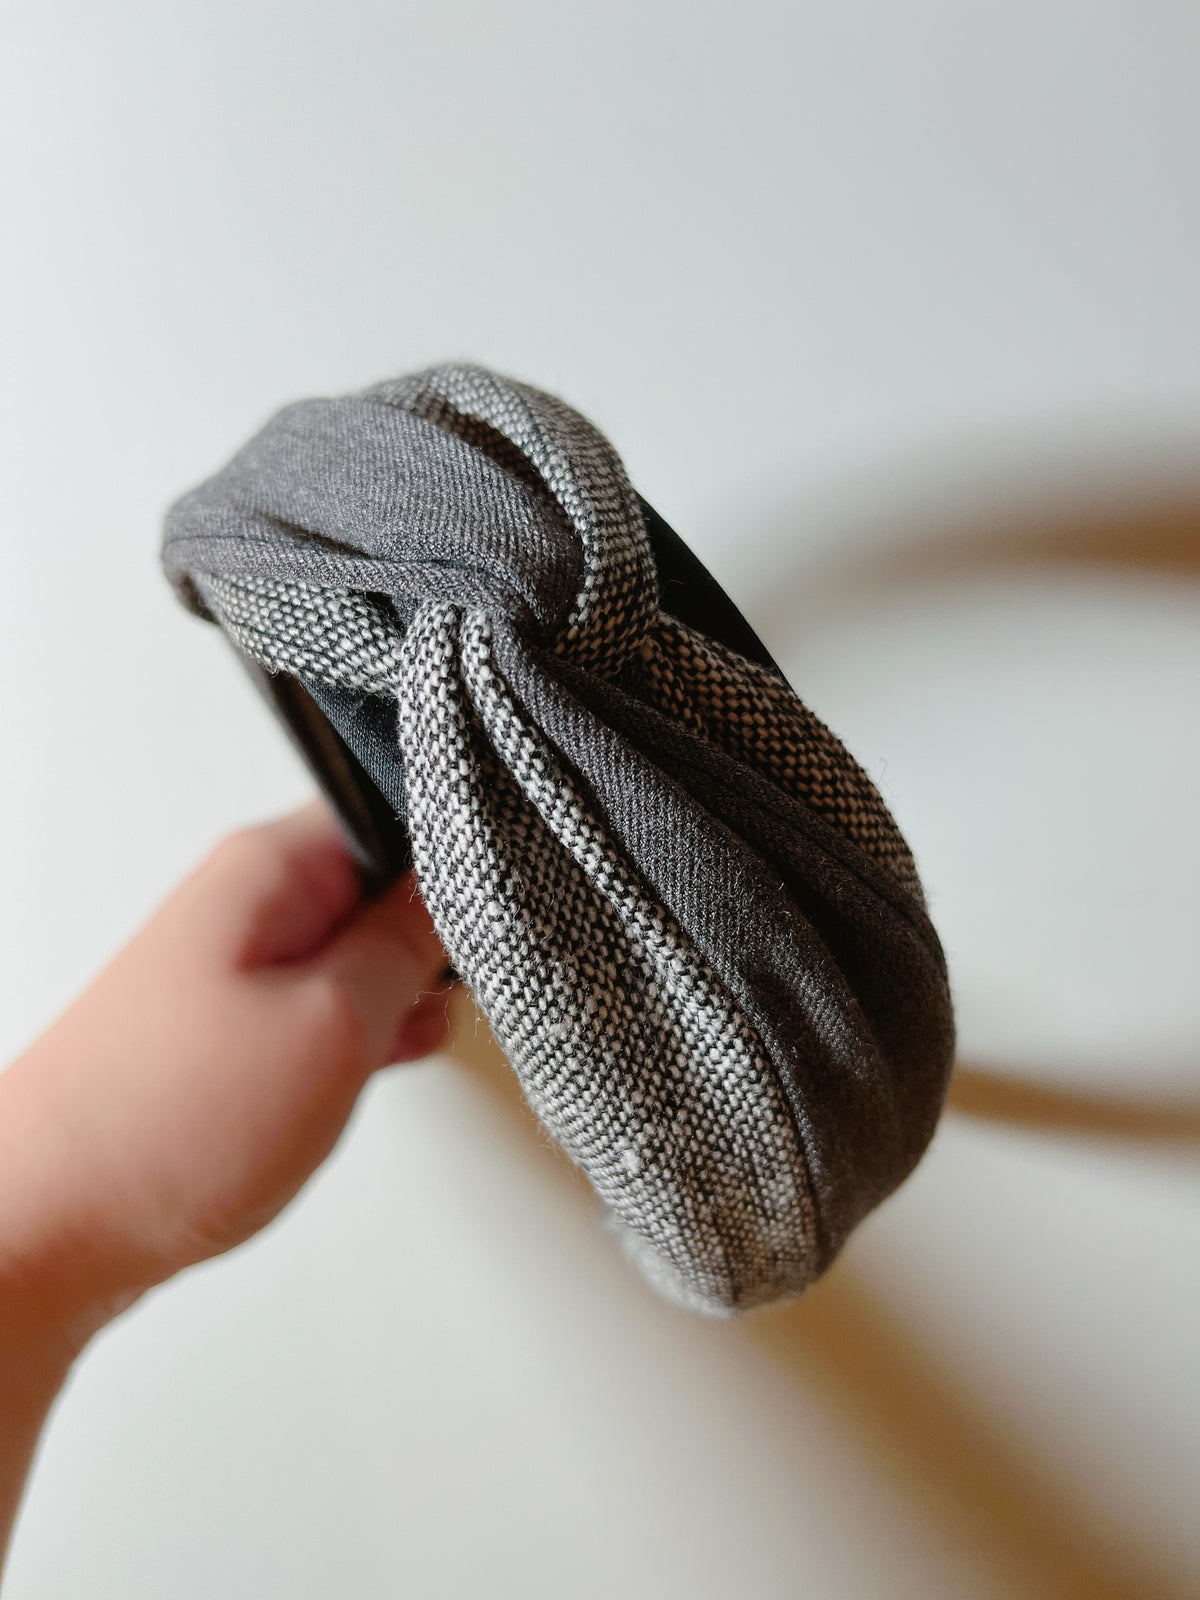 韓式人工髮箍- 淺深灰色併布髮箍